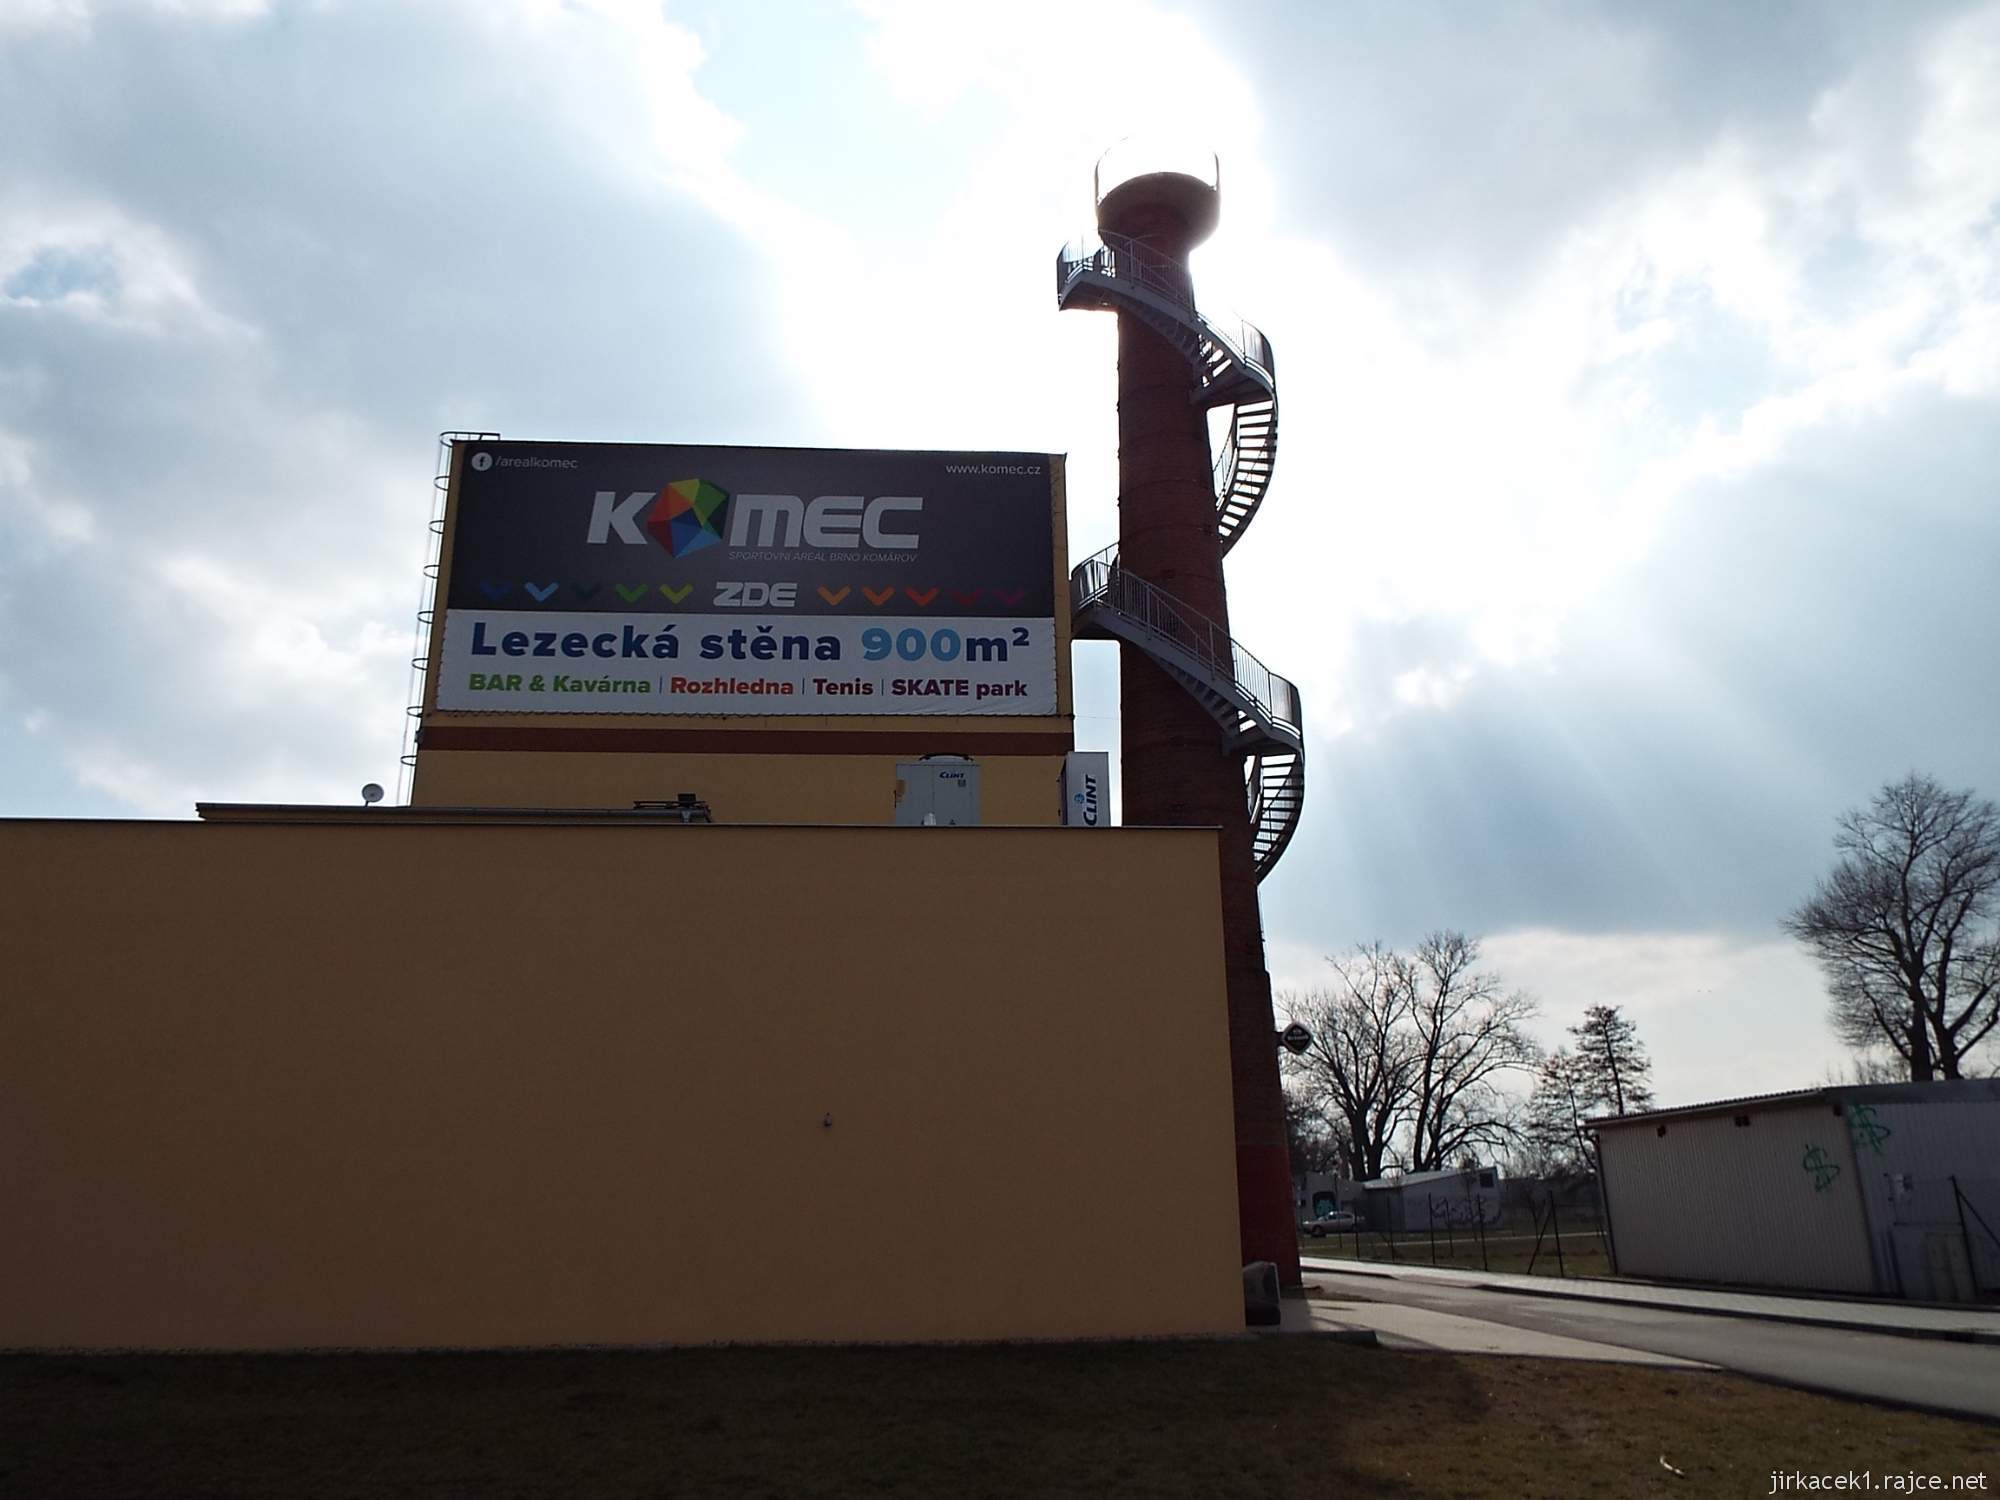 Brno - rozhledna Komec 08 - budova centra a komín s vyhlídkou